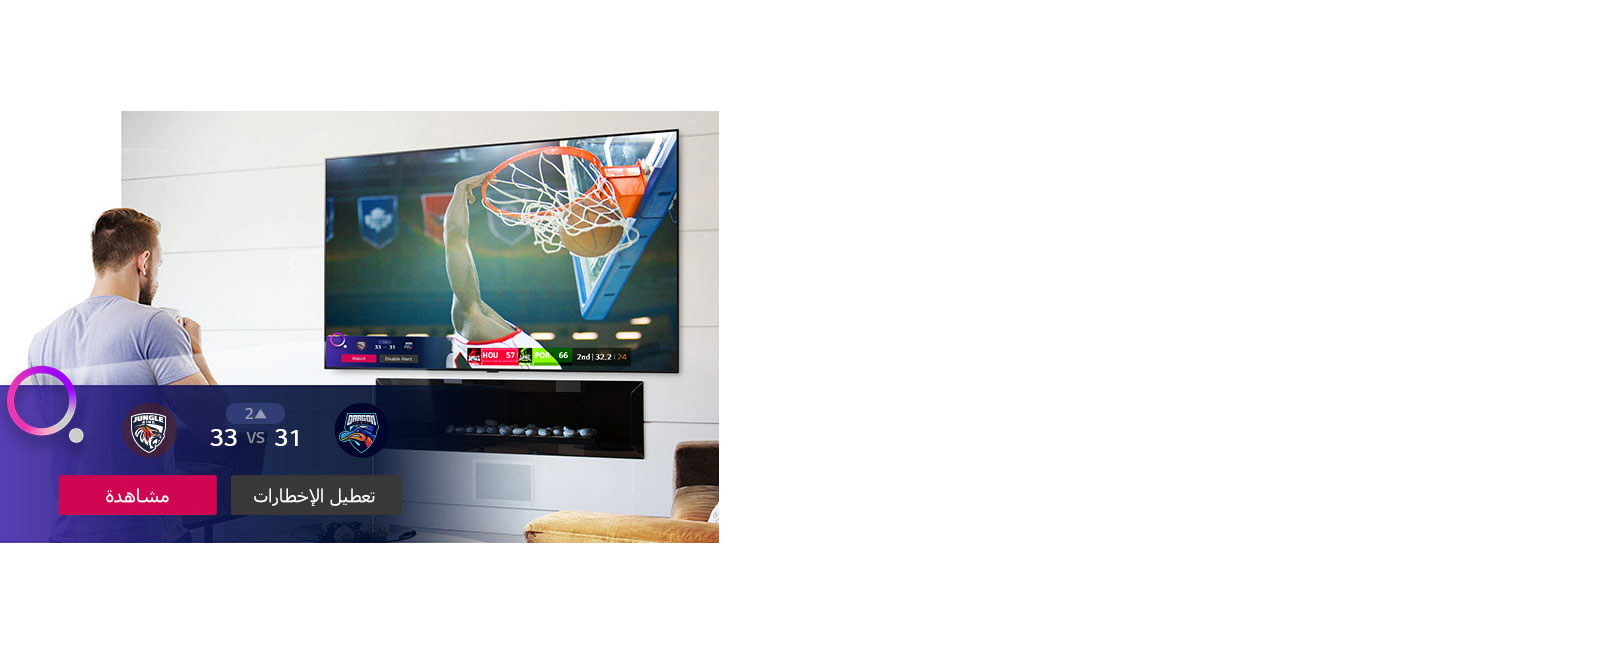 شاشة تلفزيون تعرض مشهدًا من لعبة كرة سلة مع تنبيه رياضي